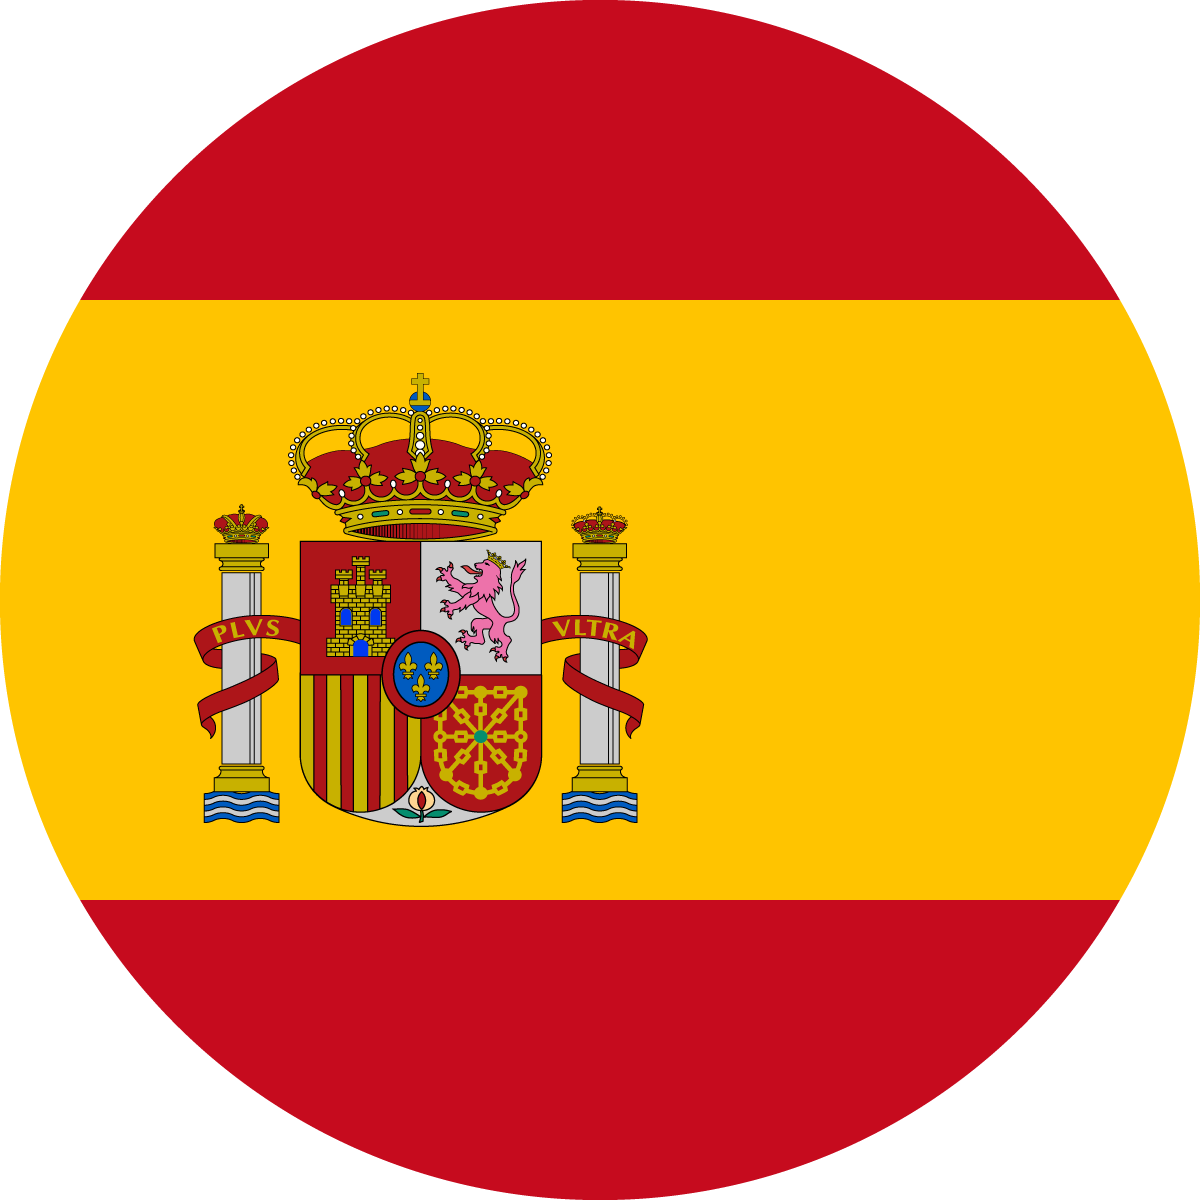 Copy of Copy of Copy of Copy of Copy of Copy of Spain